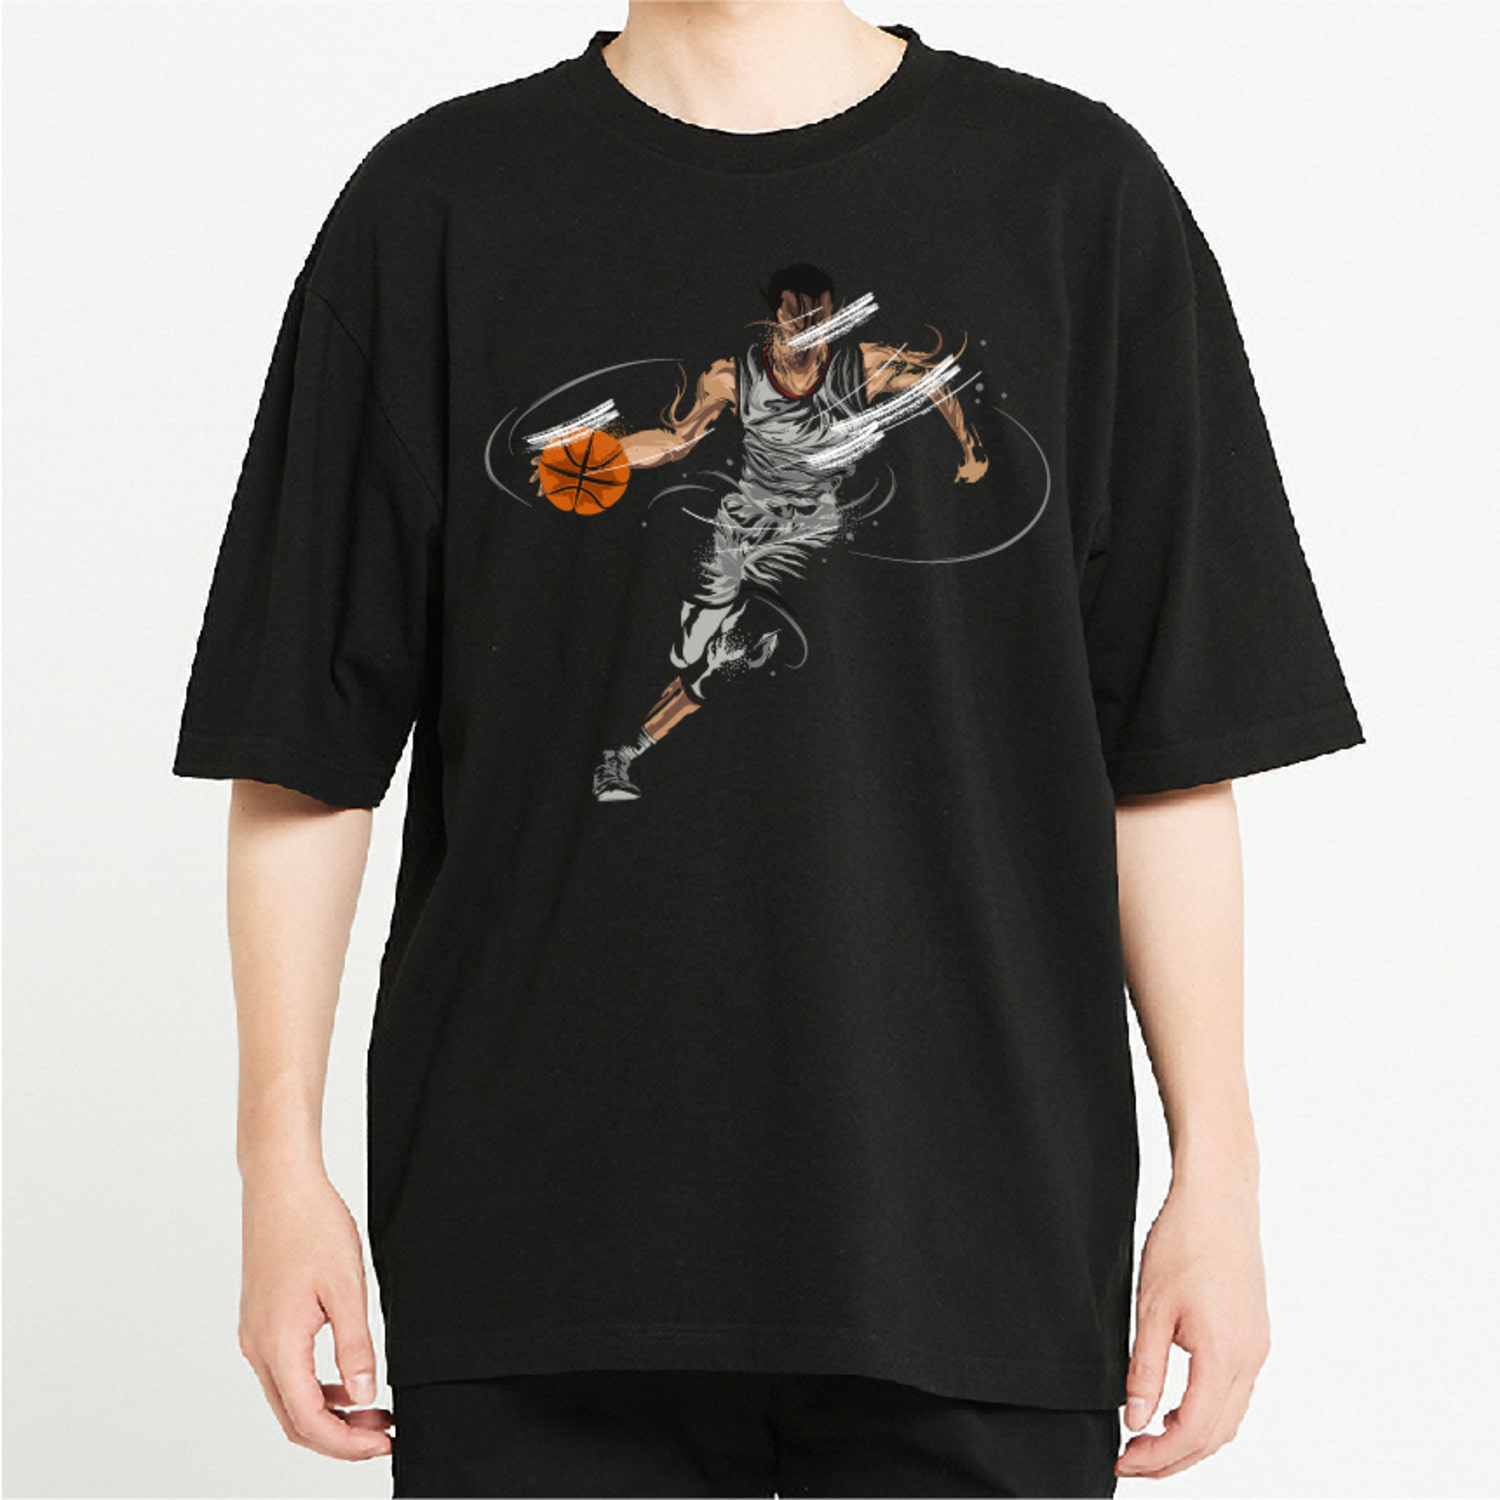 농구 선수 그래픽 오버핏 티셔츠 health.25